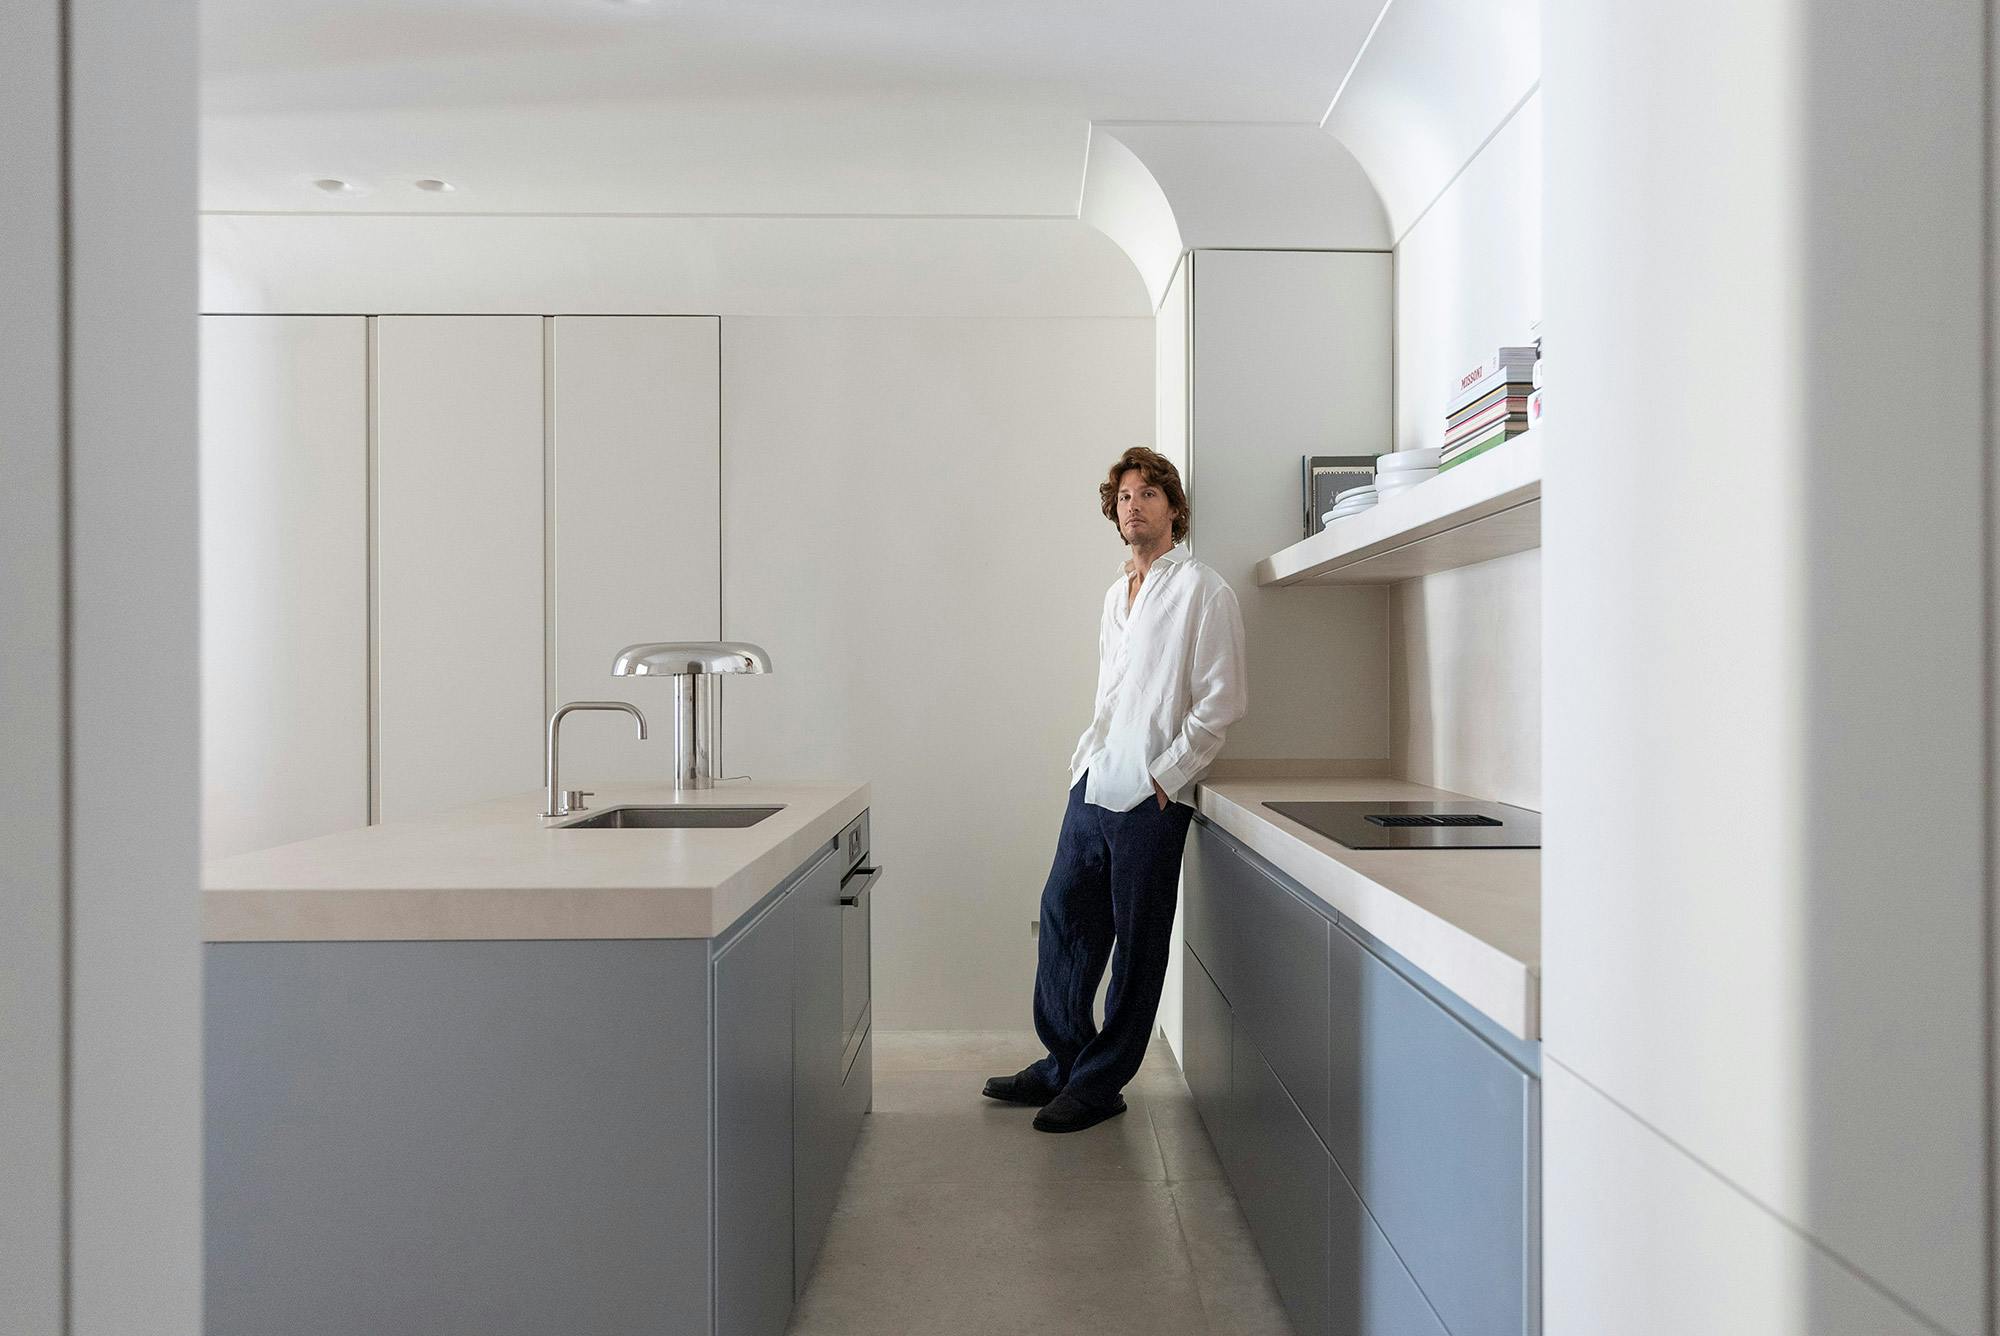 Numero immagine 45 della sezione corrente di Dekton Arga creates an elegant atmosphere in this open plan kitchen with a minimalist approach di Cosentino Italia